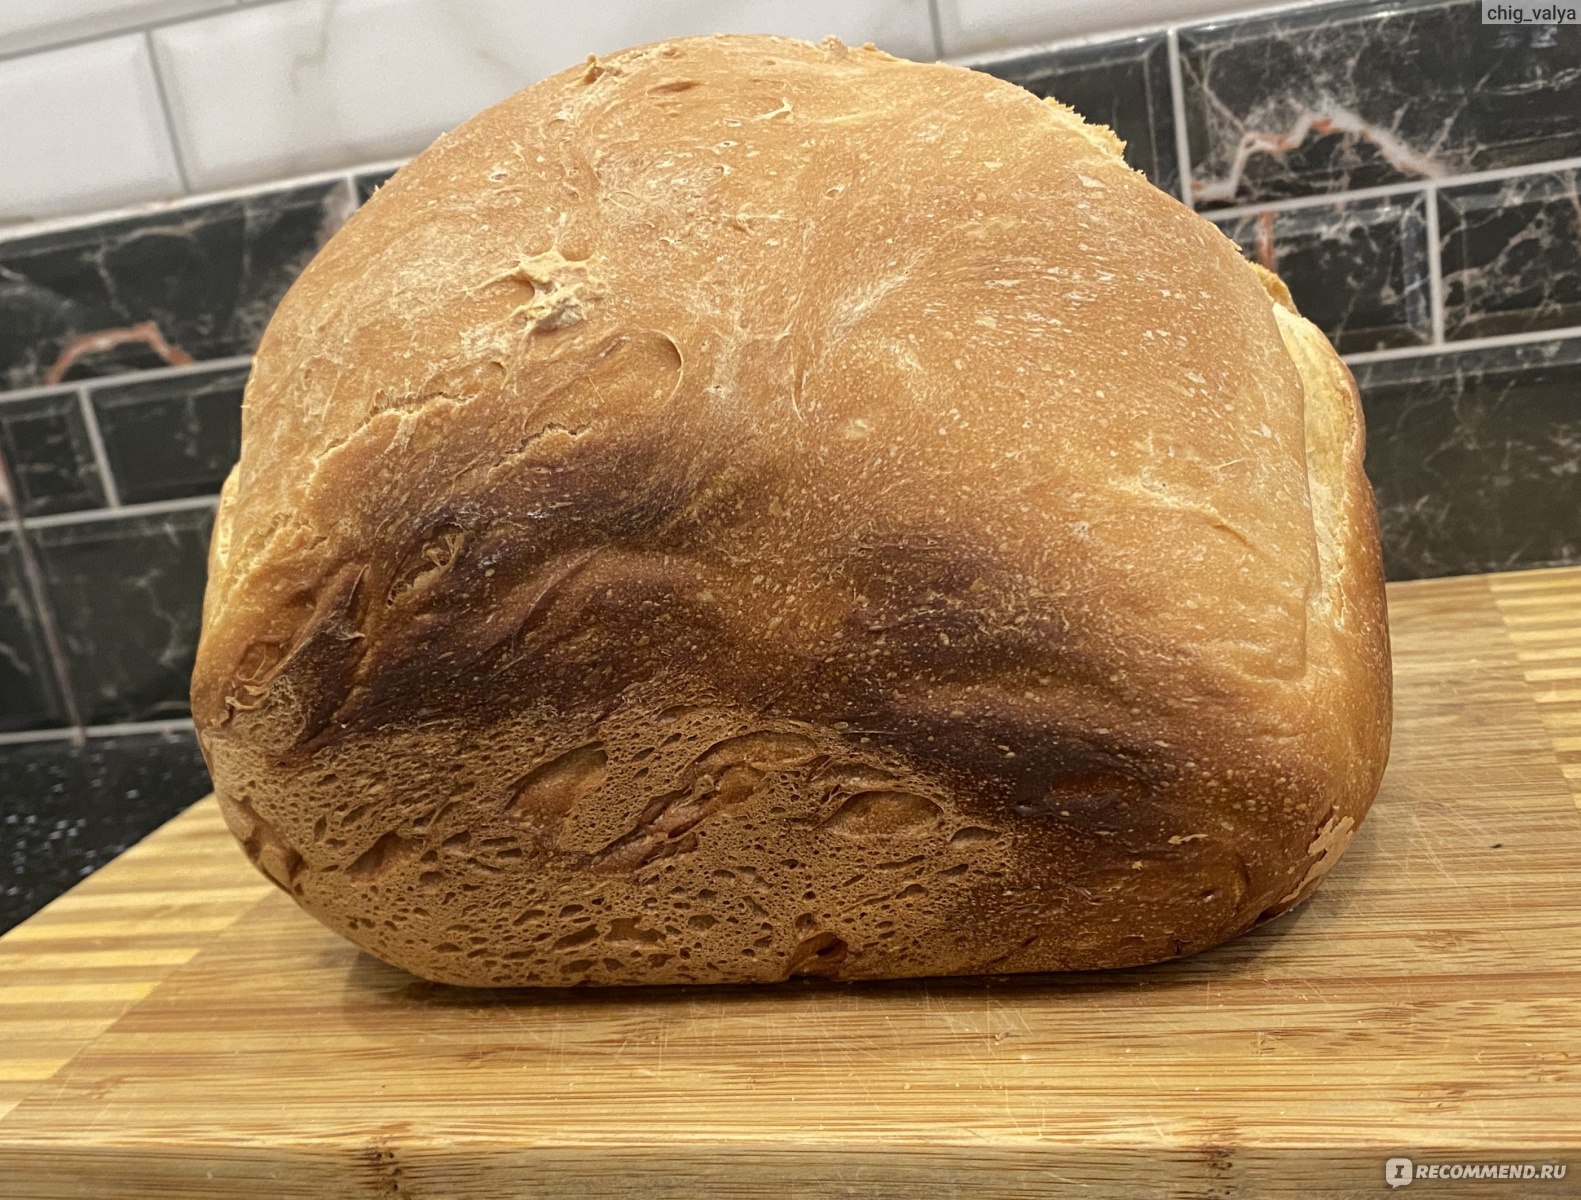 Хлебопечка борк рецепты. Хлебопечка Борк х800 рецепты хлеба. Стадии выпечки хлеба в borkx500. Bork рецепты хлеба. Хлеб традиционный рецепт в Борк.